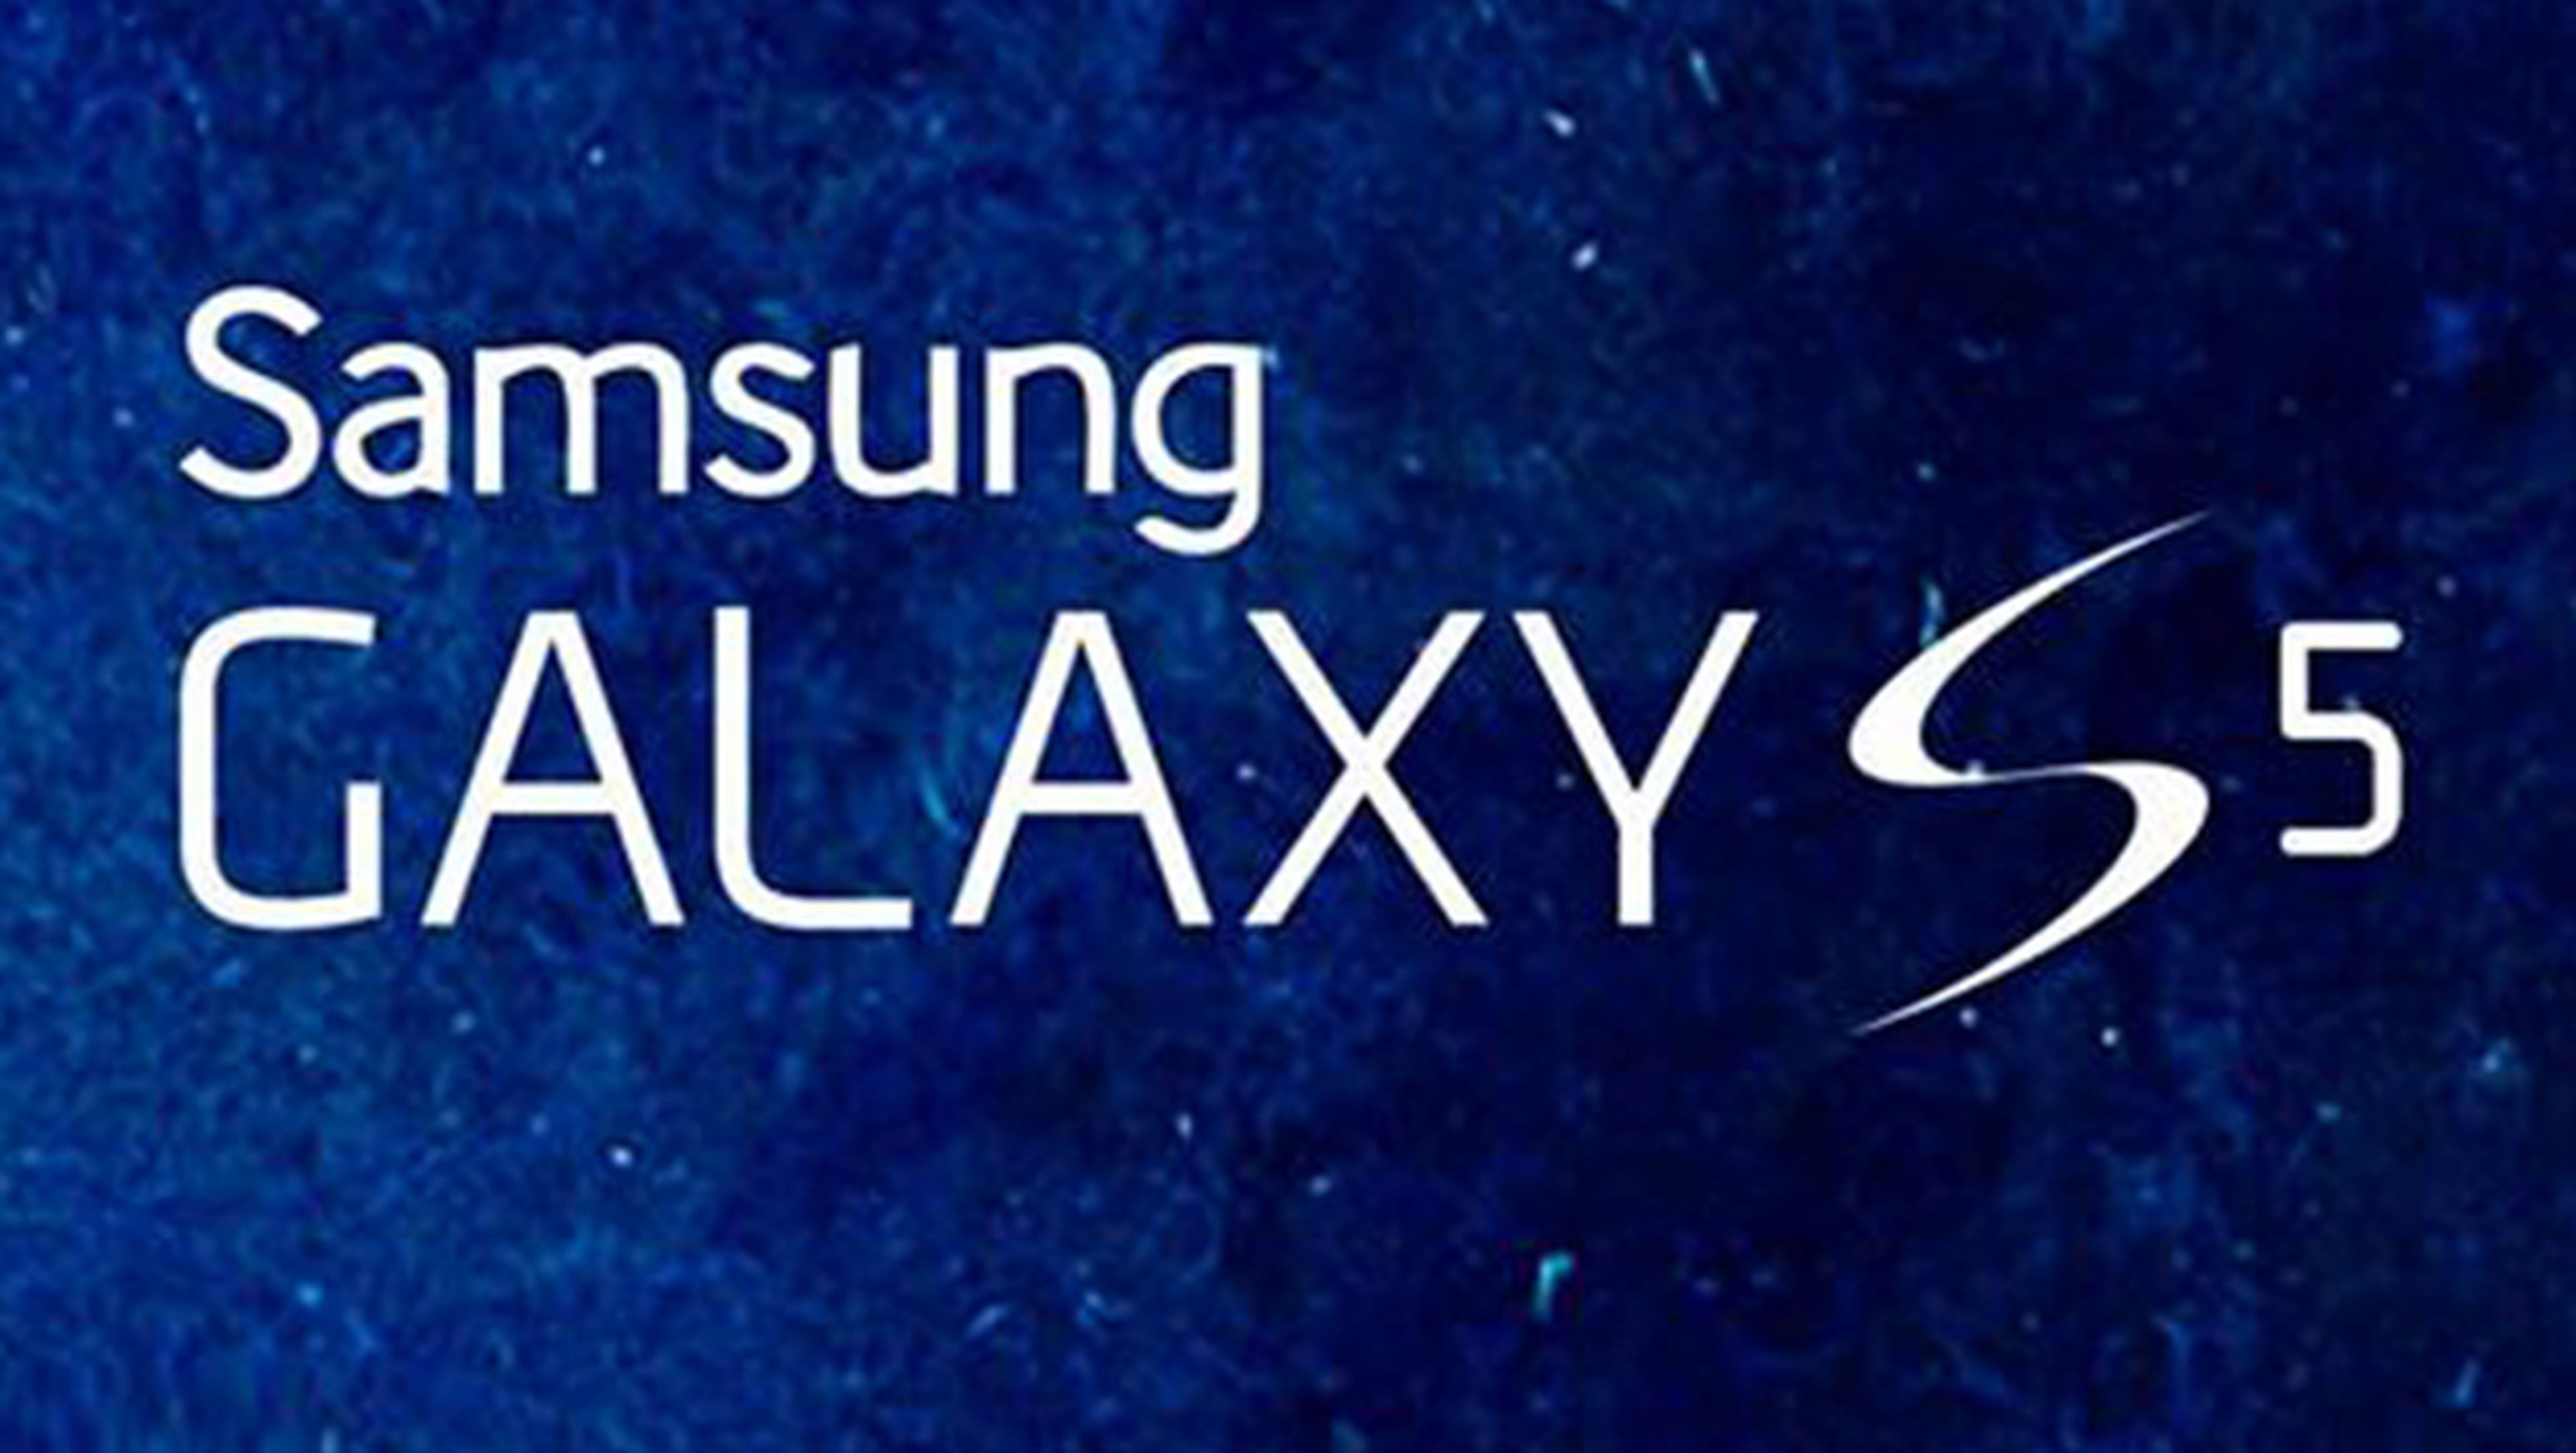 pruebas batería samsung galaxy s5